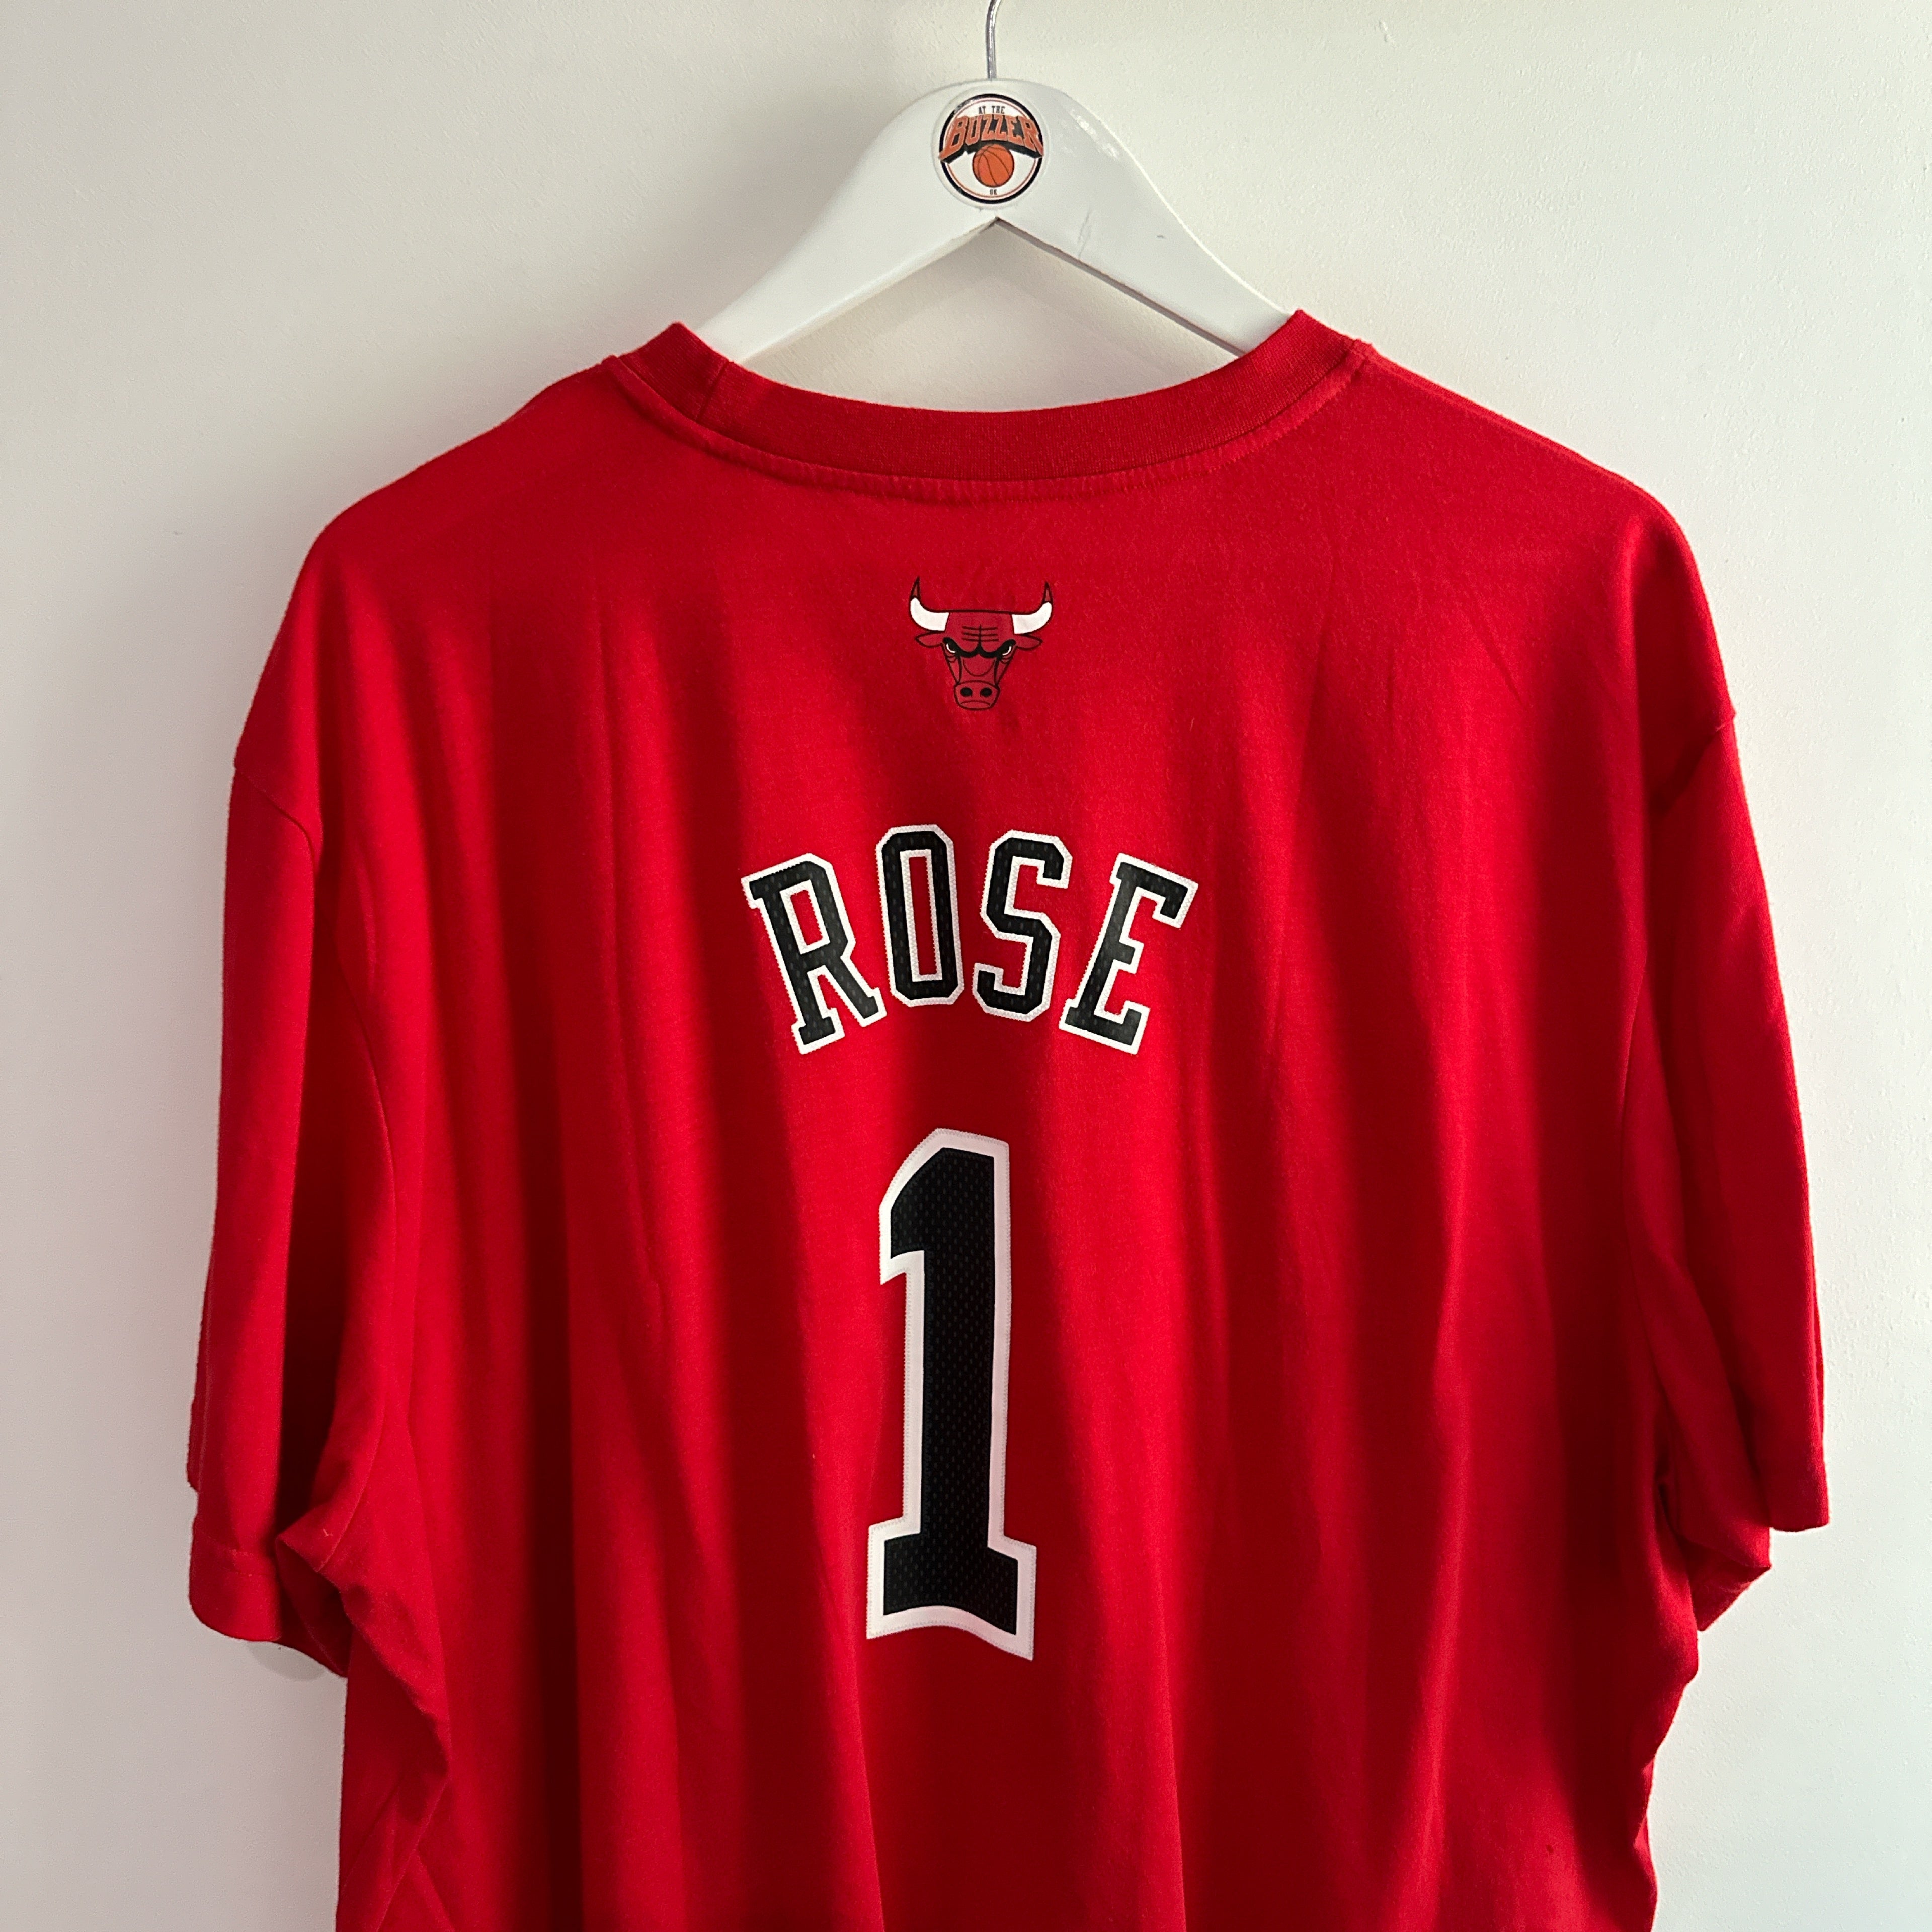 Chicago Bulls Derrick Rose Adidas T shirt - XXXL